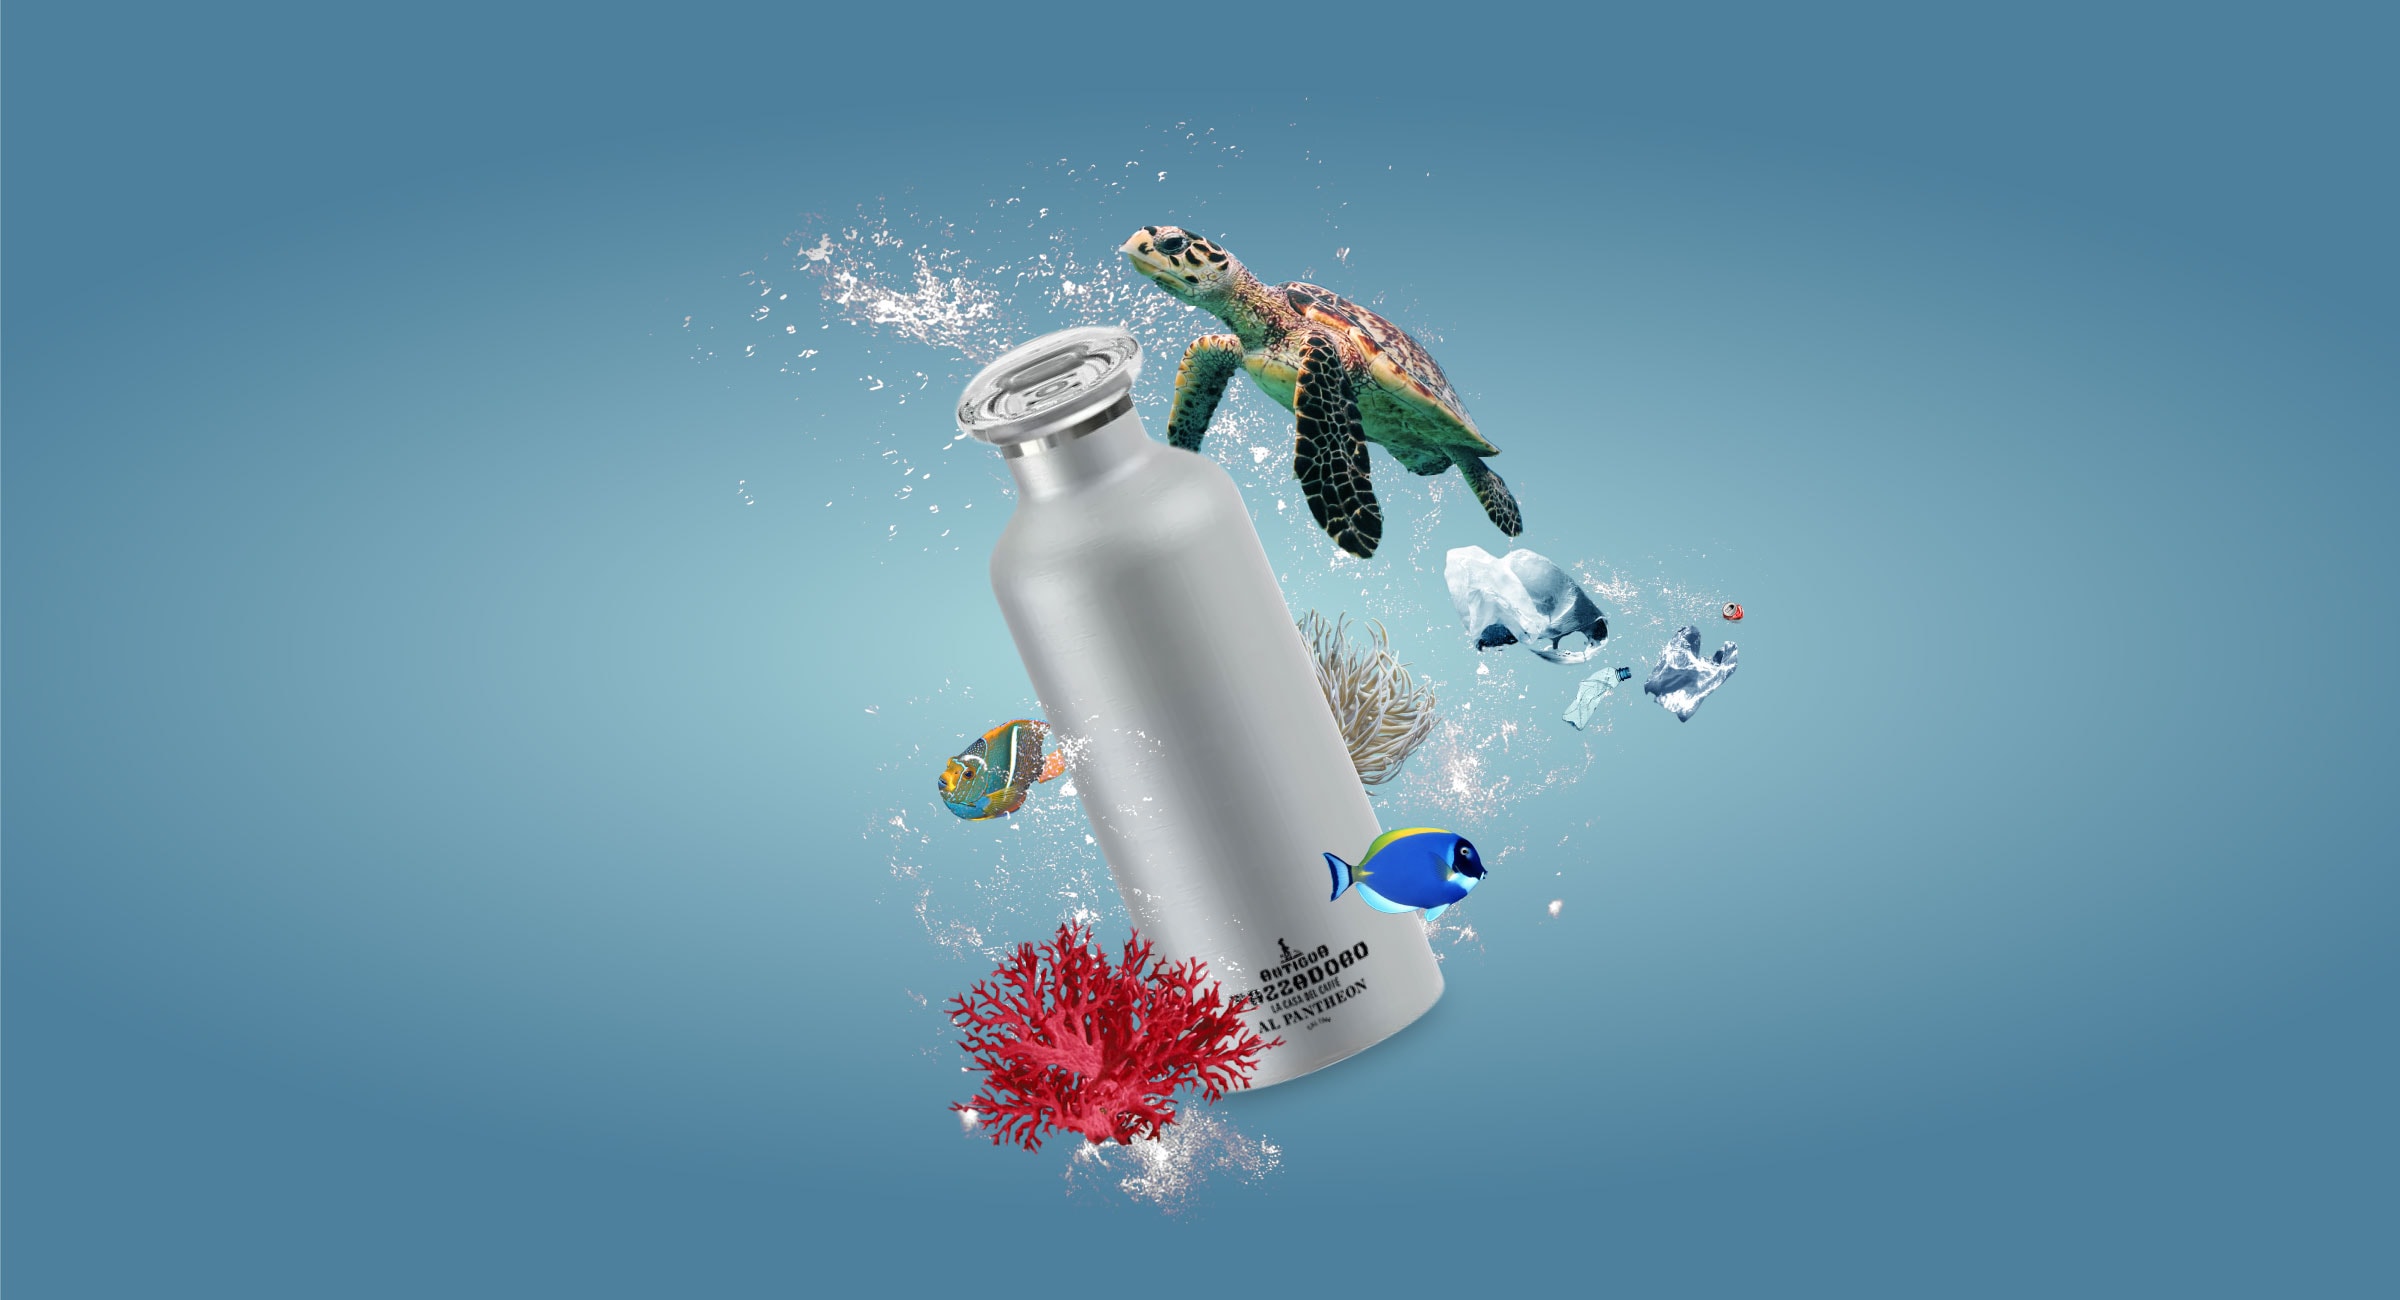 Composizione grafica di una borraccia con bolle d'acqua, una tartaruga, sacche di plastica e pesci.